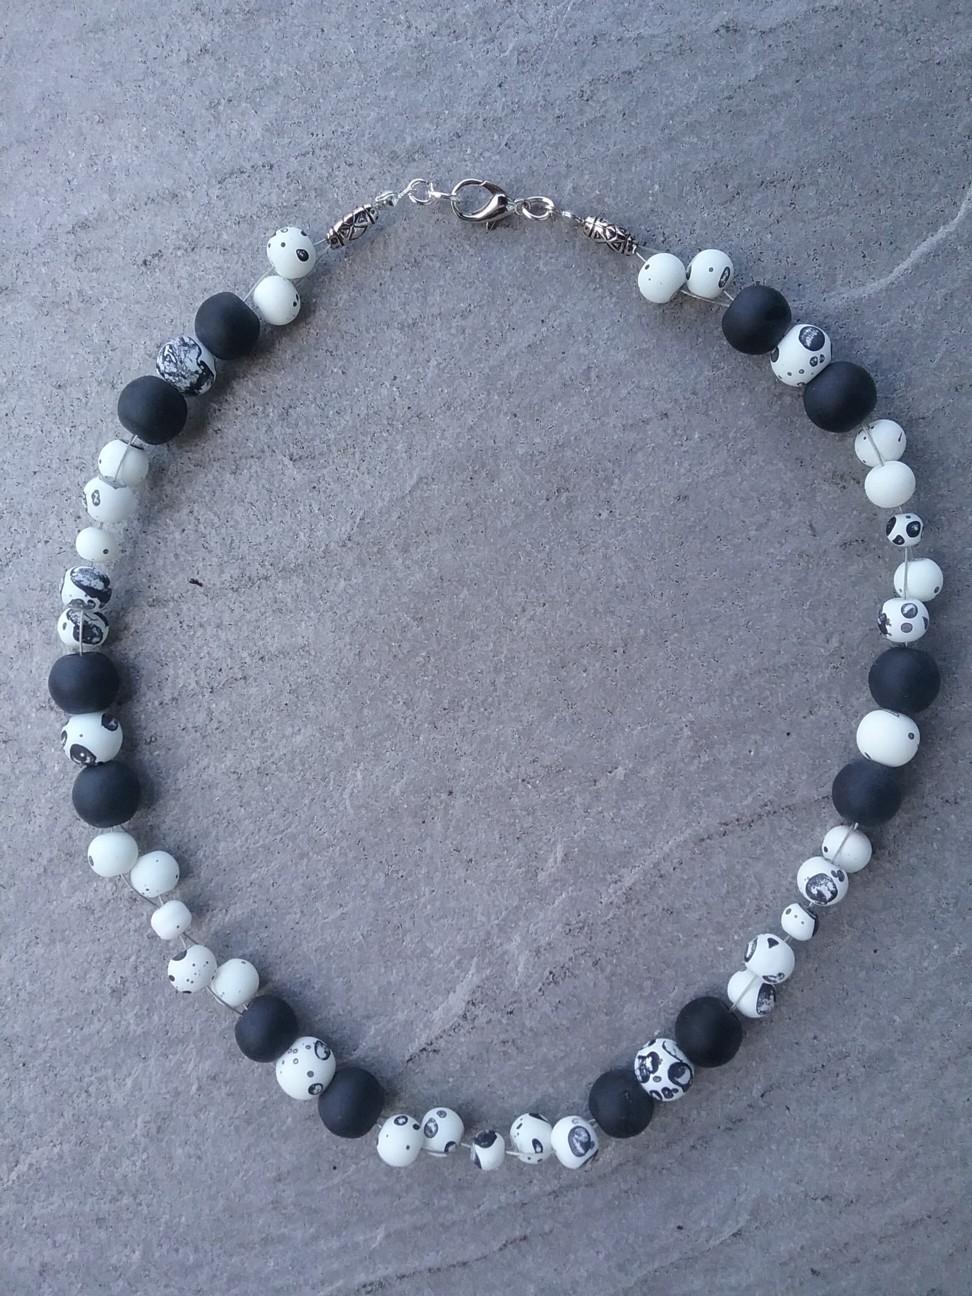 schwarzen Perlen einen metallfarbenen Doppeldraht.